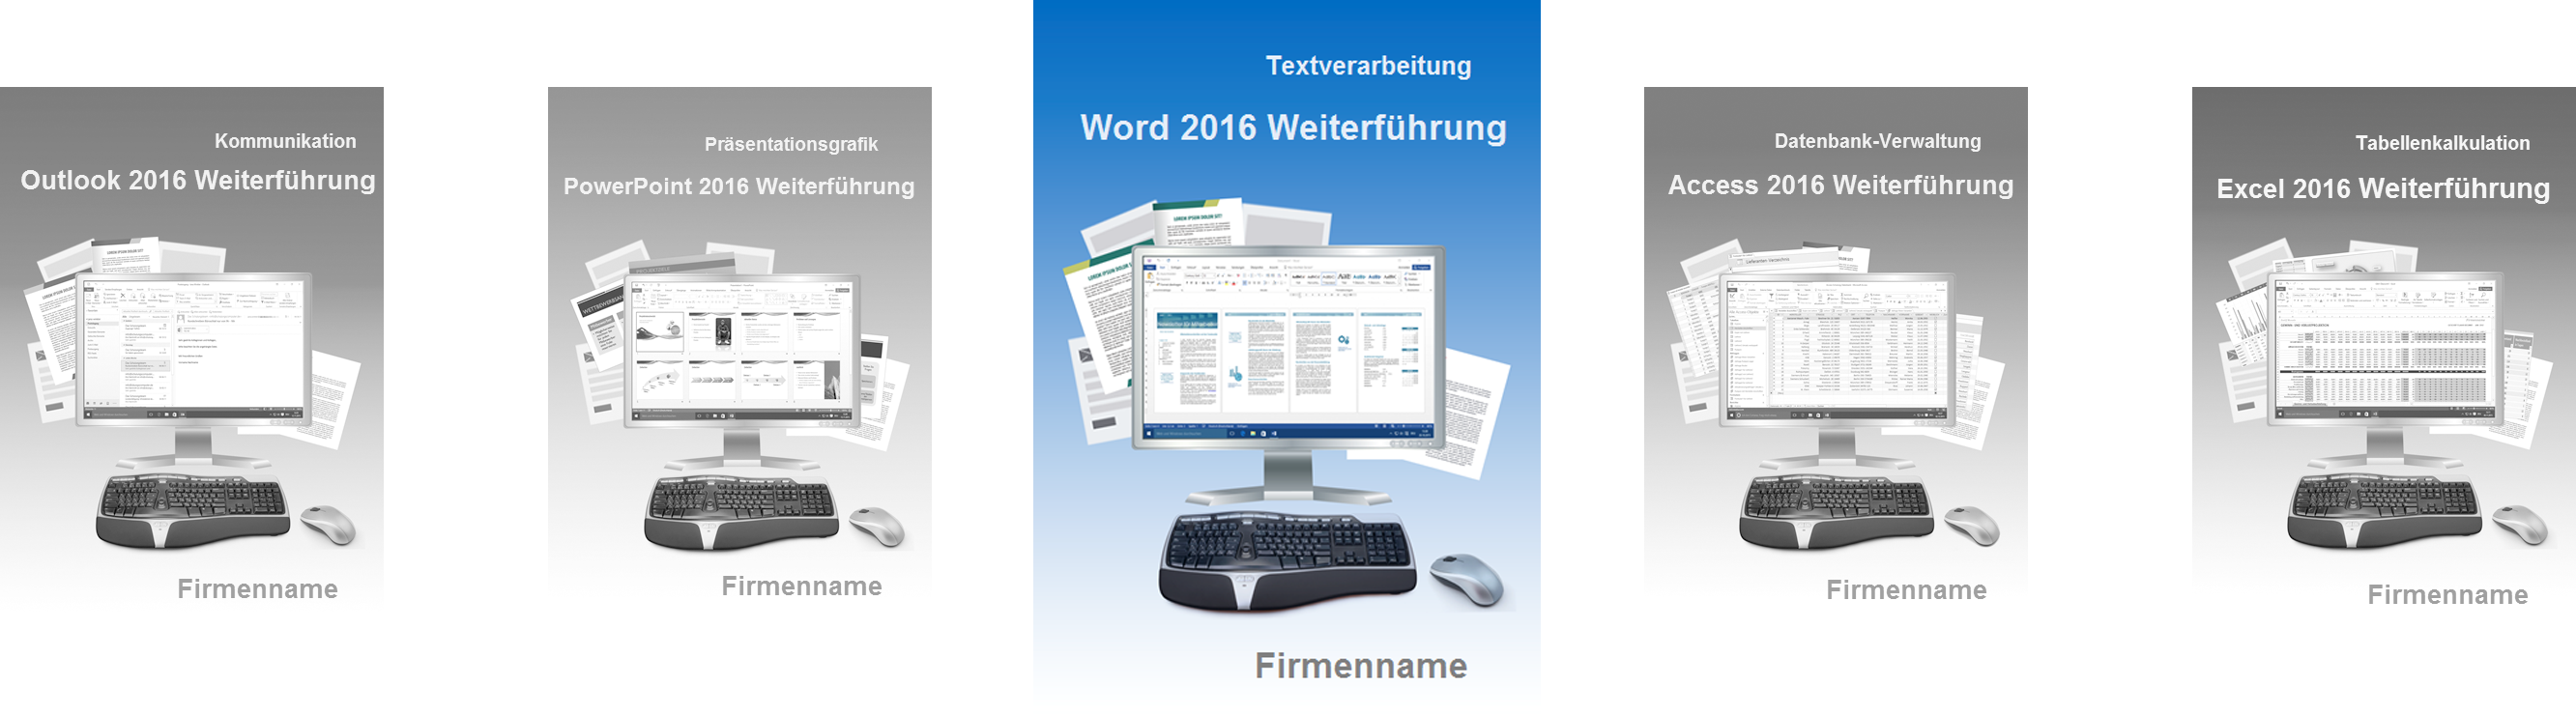 schulungsunterlage-word-2016-weiterführung-cover